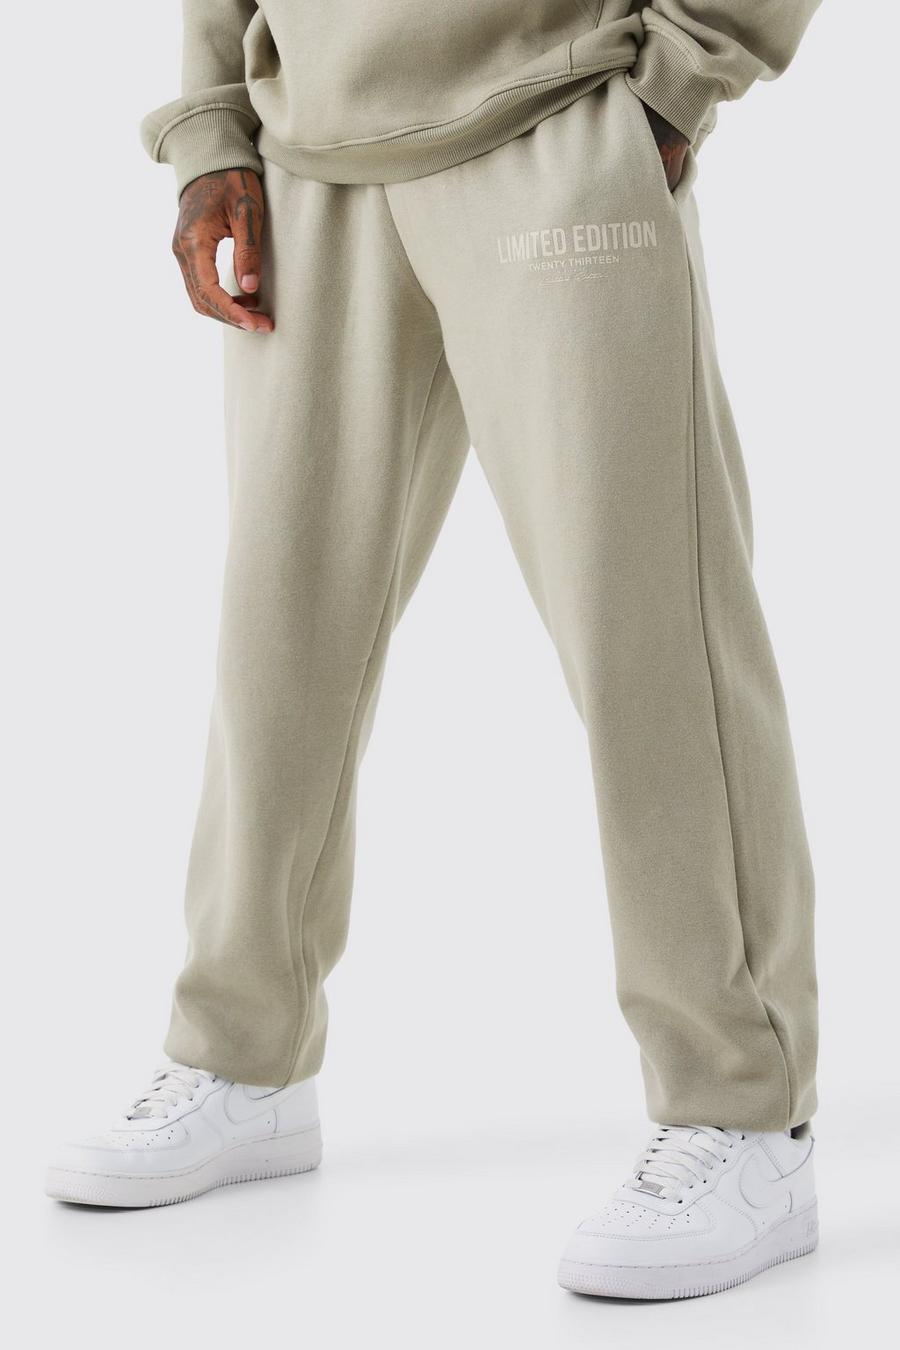 Pantalón deportivo oversize Limited Edition con estampado de texto, Stone